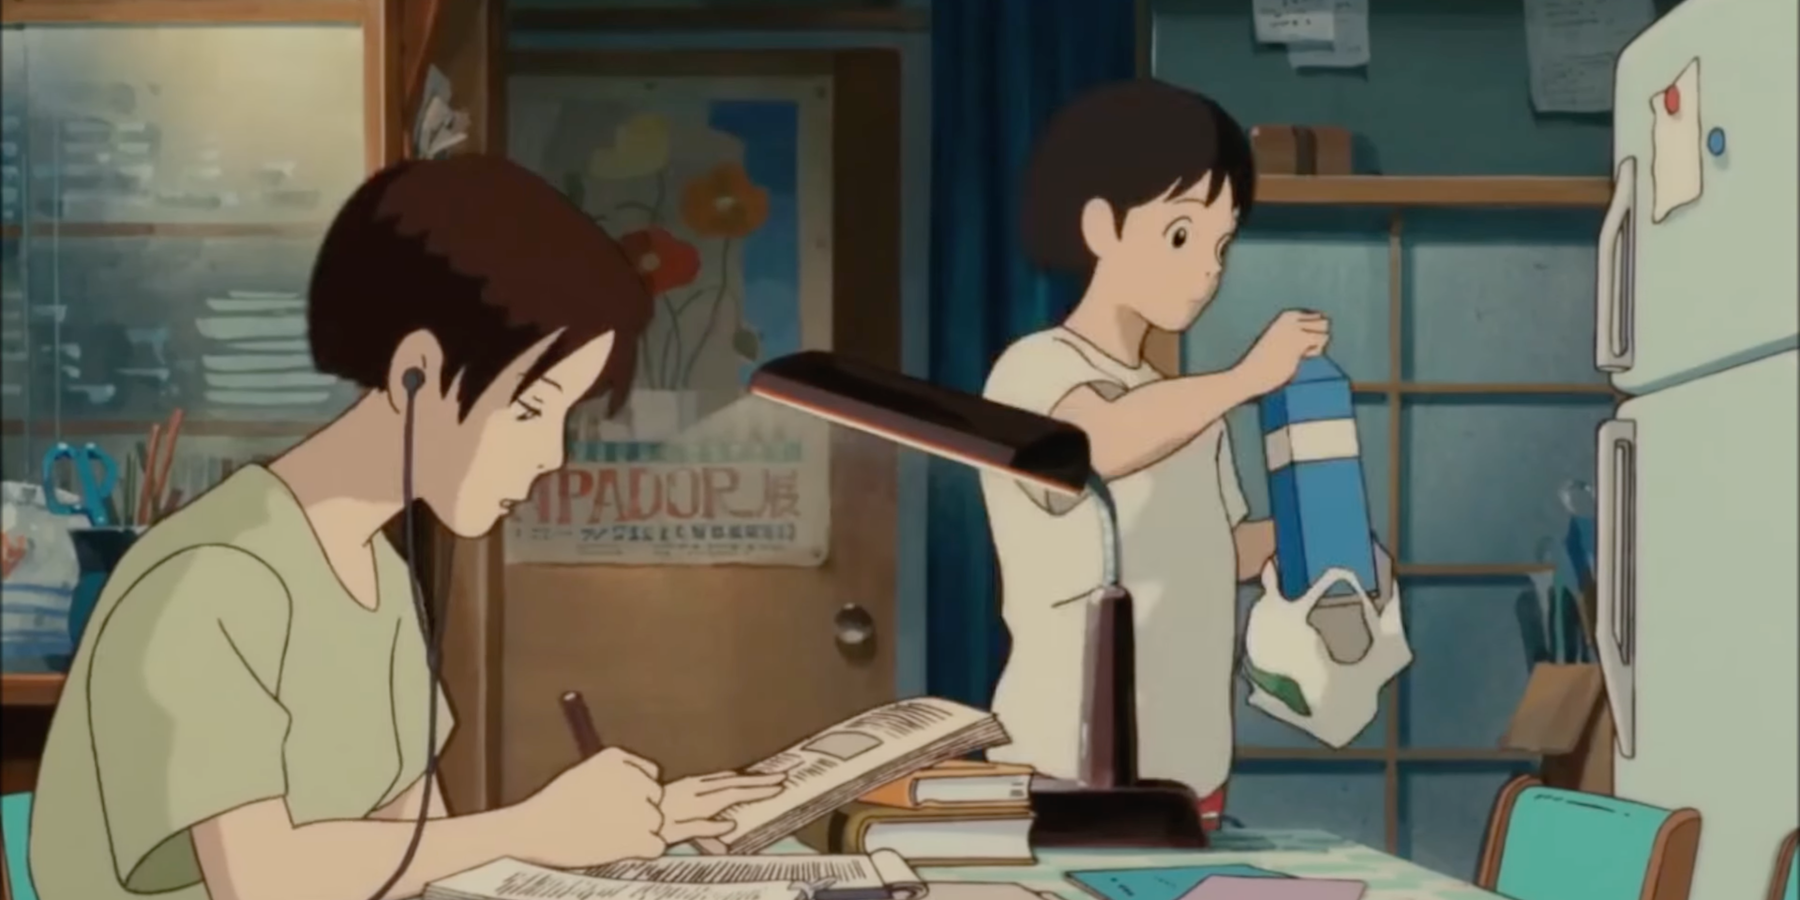 Рейтинг лучших историй о взрослении от Ghibli